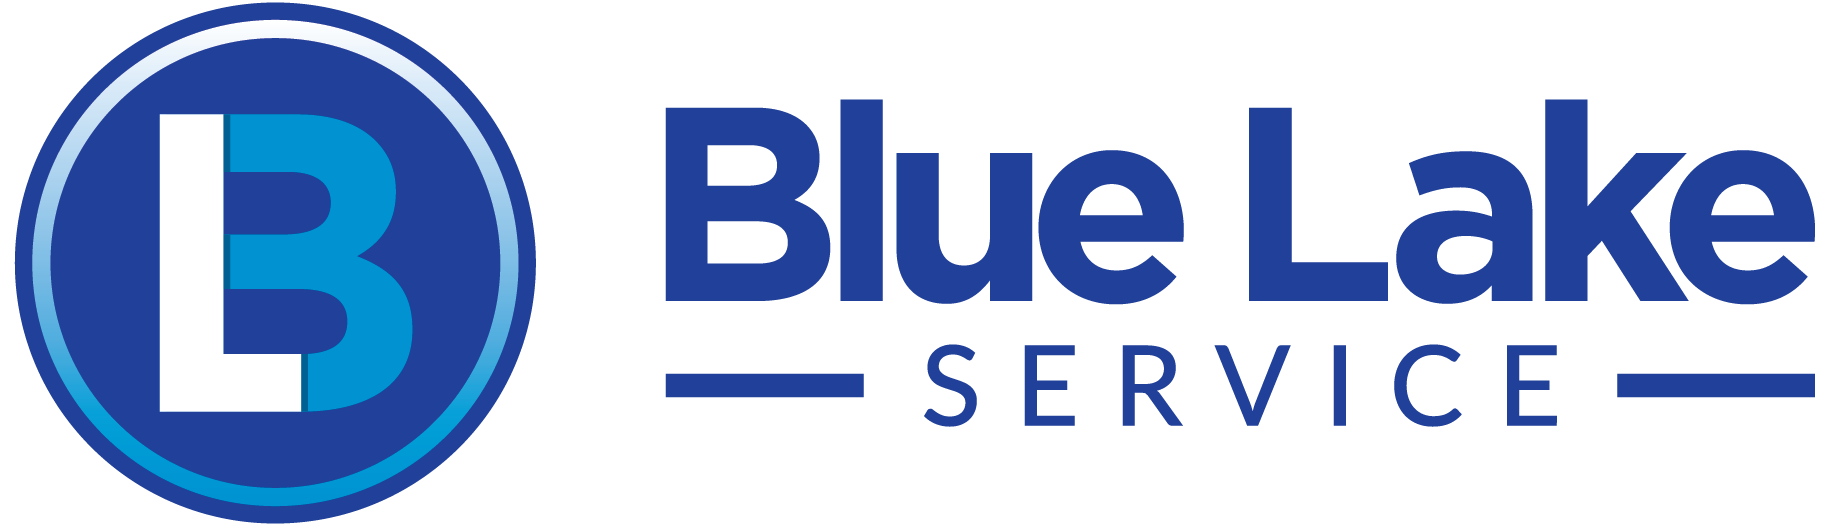 Blue Lake Service